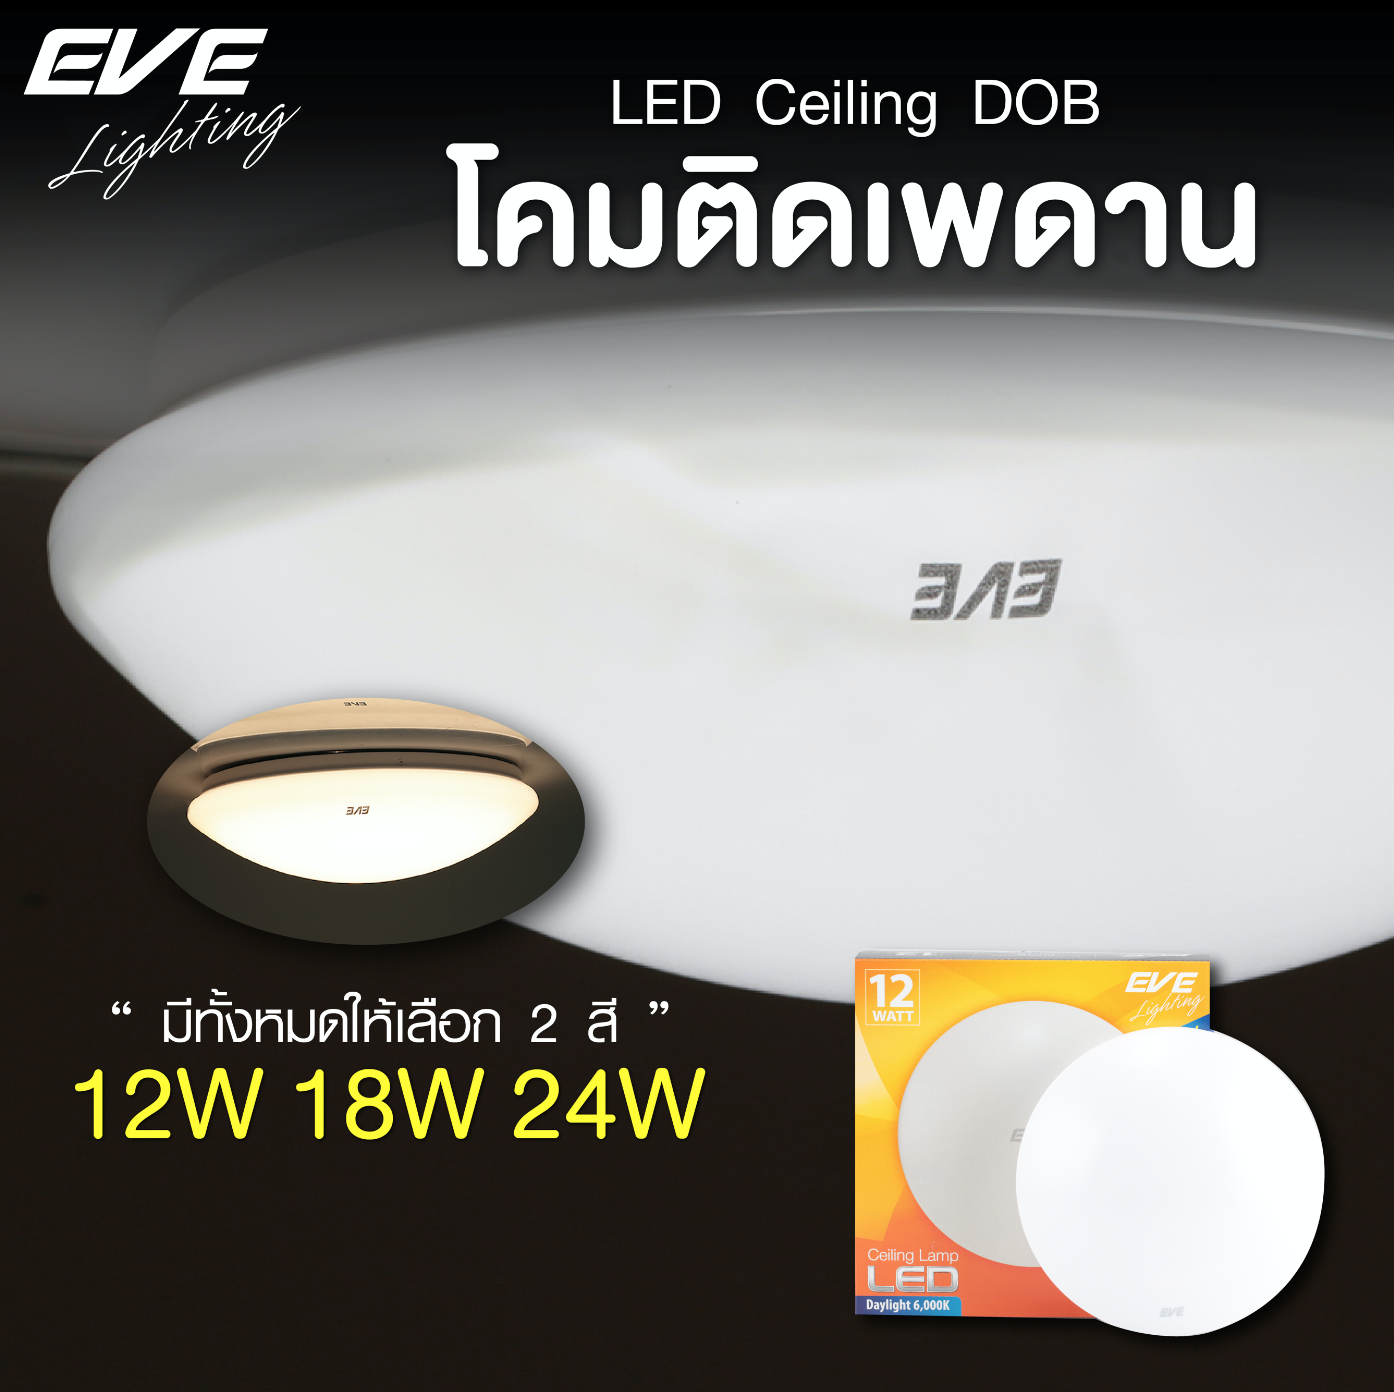 LED Ceiling 12, 18, 24W โคมเพดานแอลอีดี แสงขาว และ แสงเหลือง มี 3 ขนาด 12, 18 และ 24 วัตต์ น้ำหนักเบา ติดตั้งง่าย